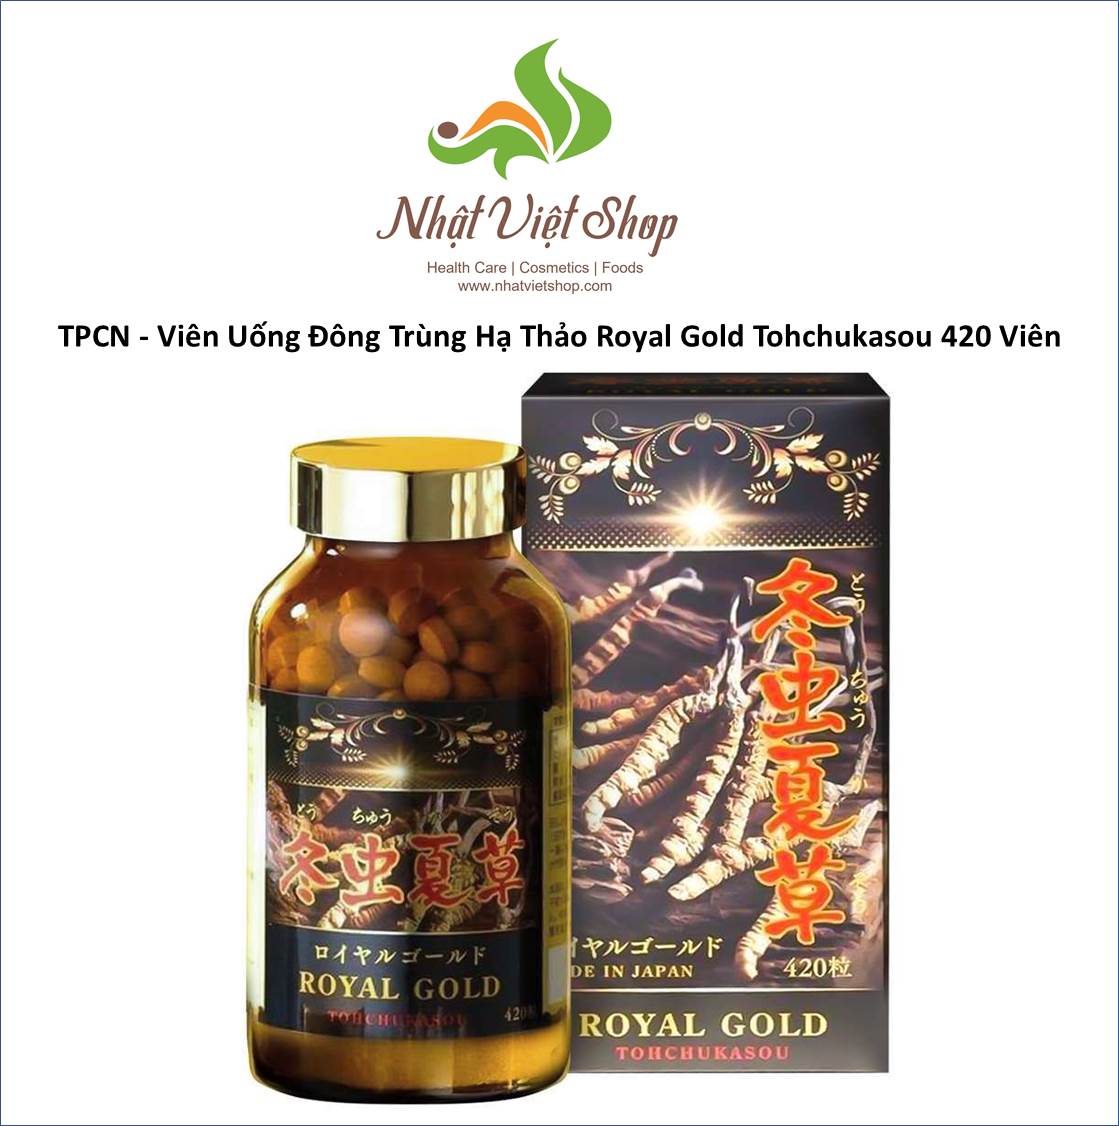 TPCN - Viên Uống Đông Trùng Hạ Thảo Royal Gold Tohchukasou 420 Viên